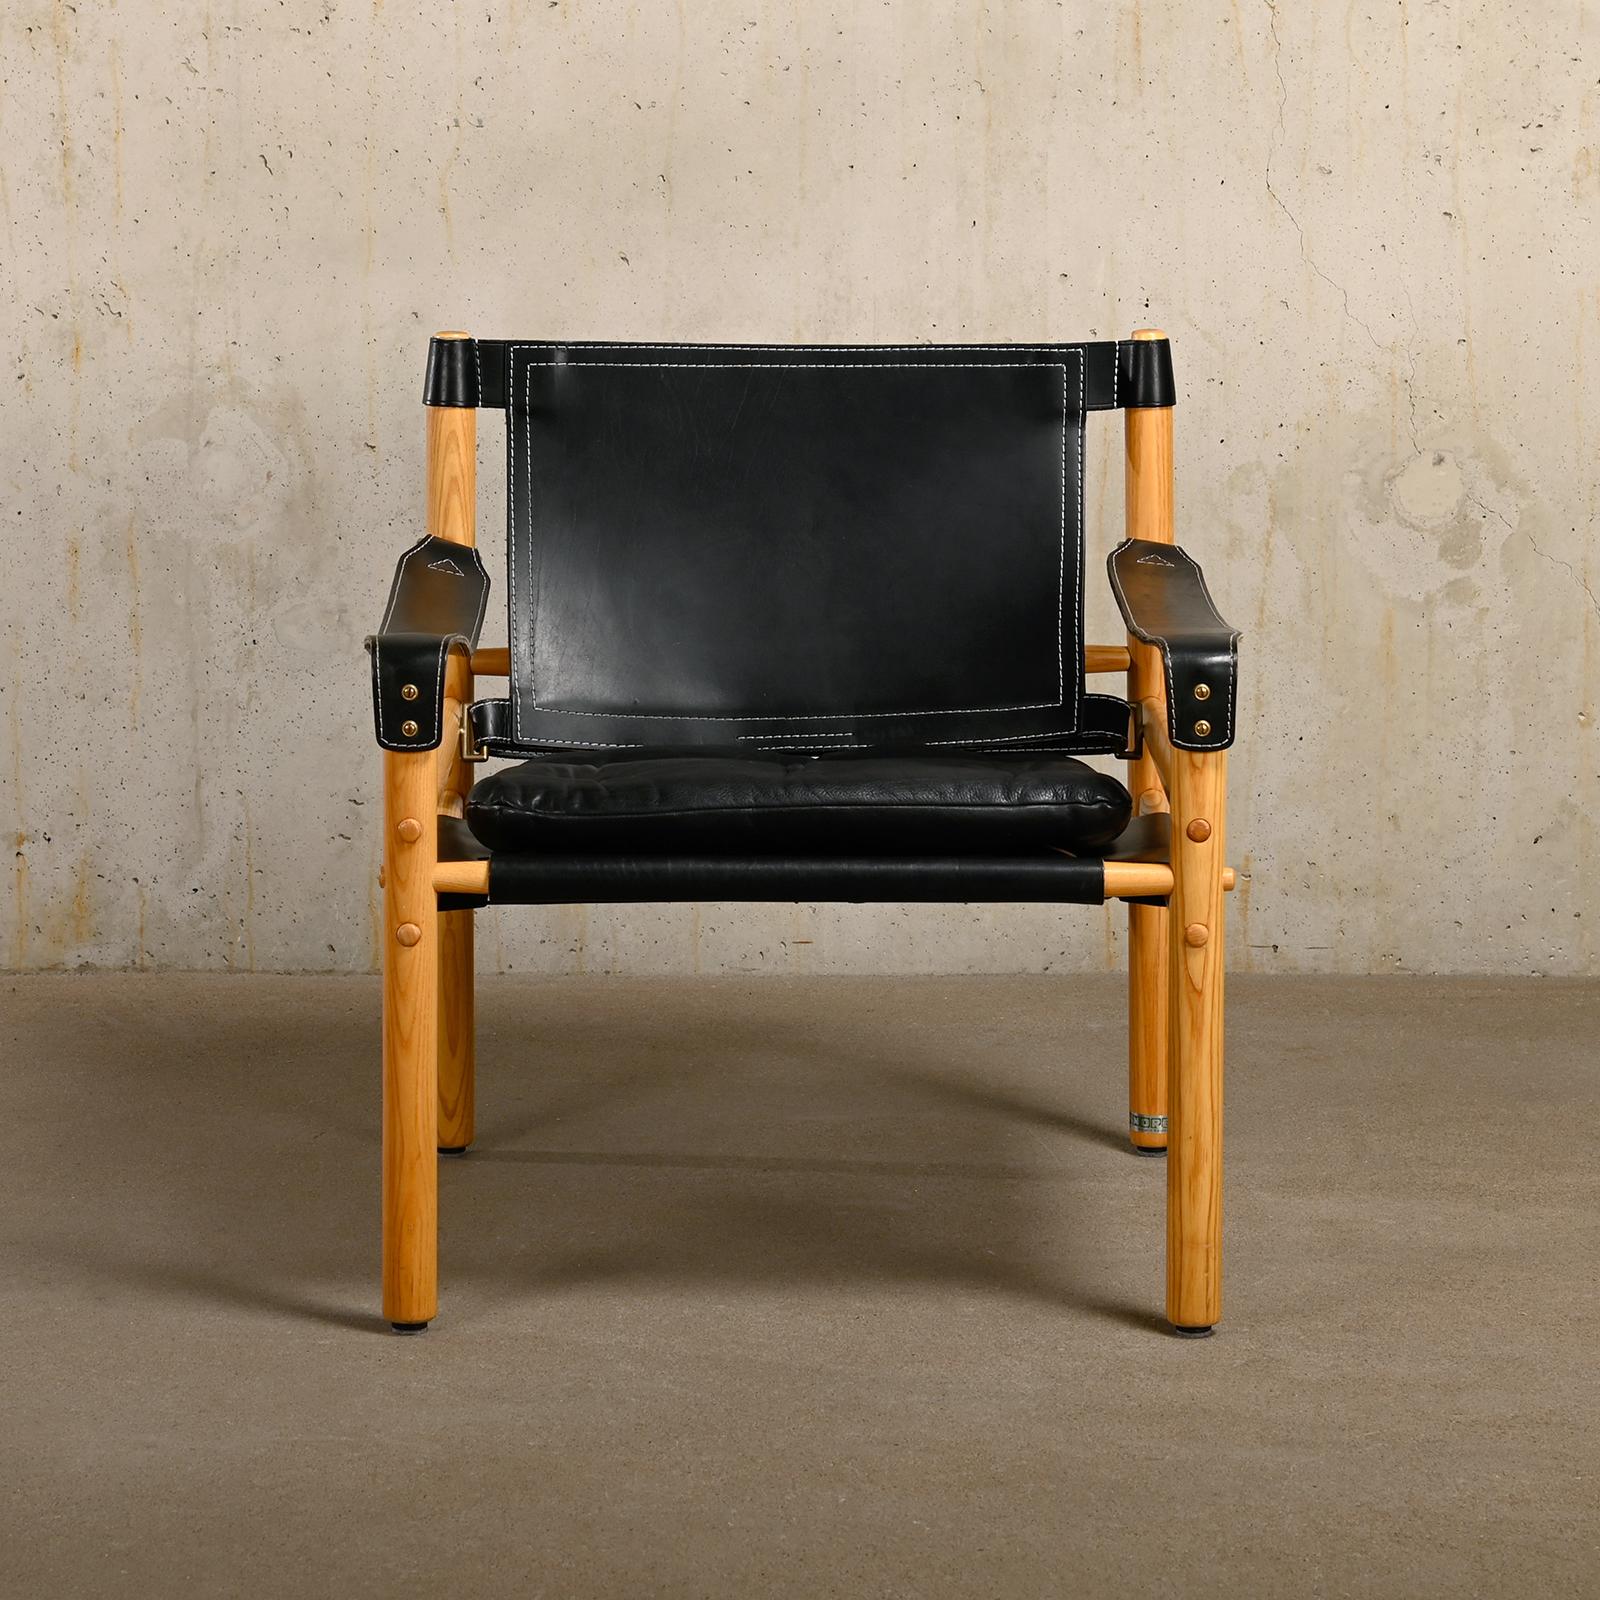 Superbe chaise longue Sirocco Safari, conçue par Arne Norell et fabriquée par Norell Möbel AB en Suède. Cadre en frêne légèrement patiné avec le coussin d'origine en cuir noir. Tous en très bon état. Signé avec l'étiquette du fabricant.